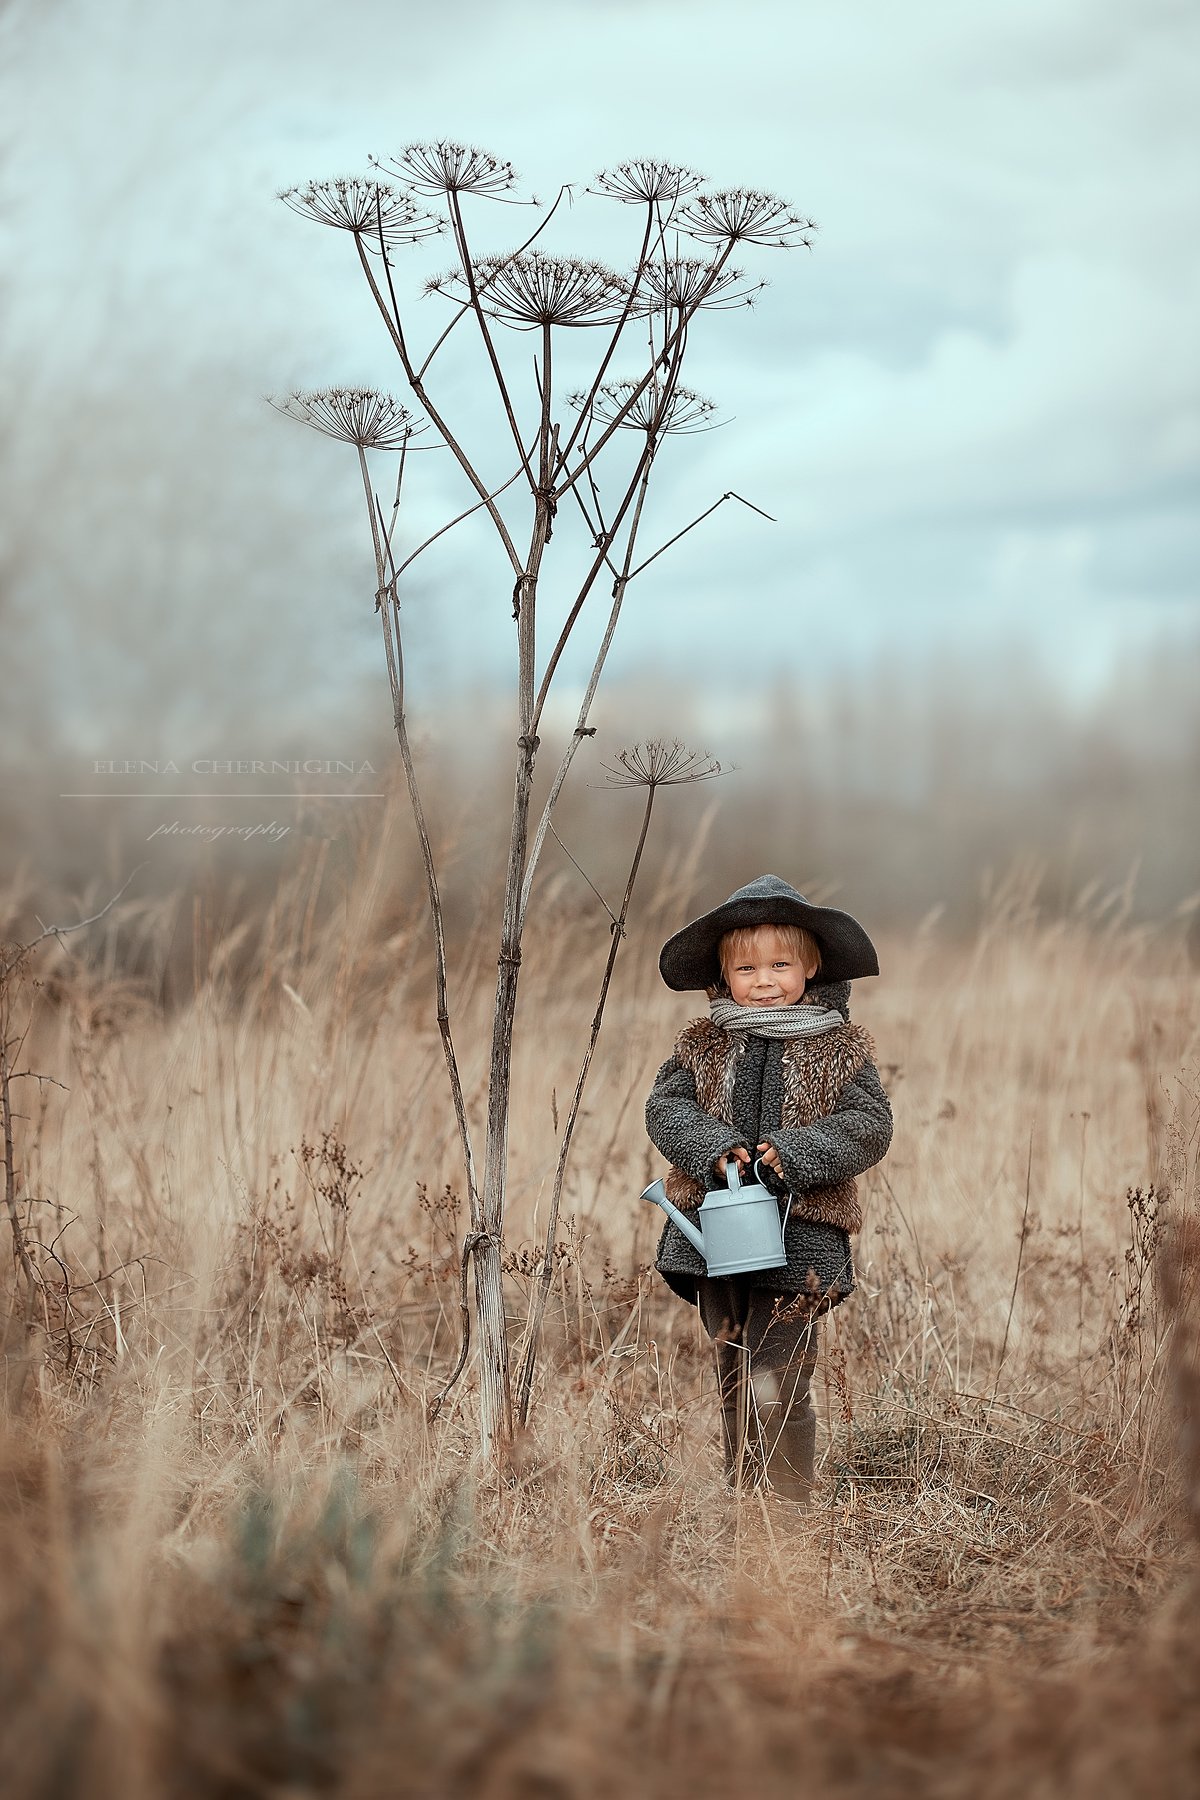 мальчик, дневной свет, дети, художественная фотография, фотосессия на природе, борщевик, улица, природа, Елена Чернигина